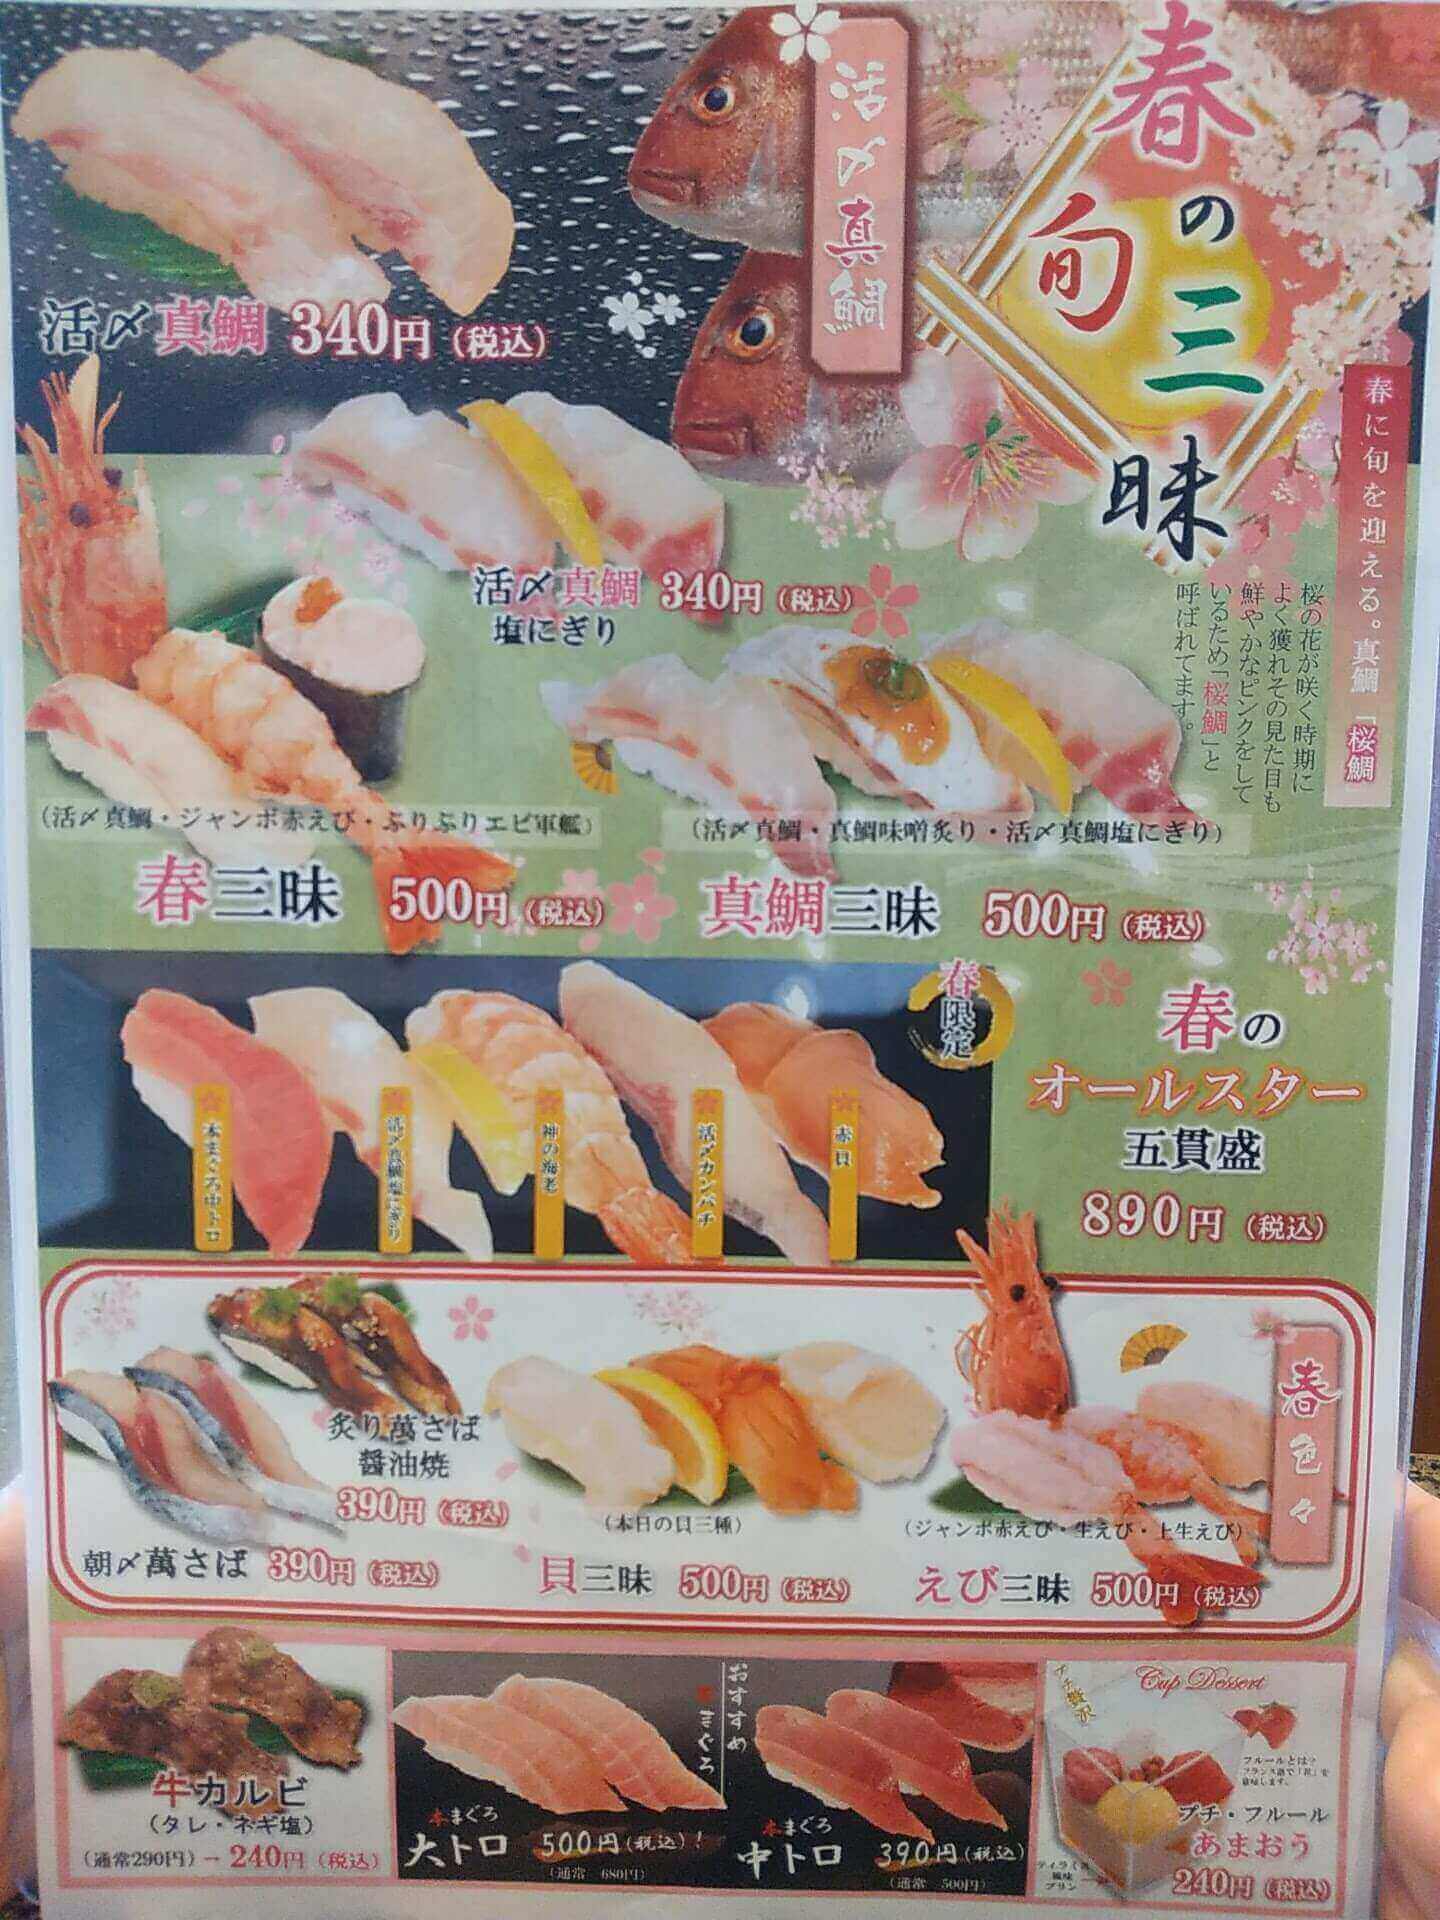 寿司まどか慈眼寺店の春に旬を迎える真鯛お勧めメニュー